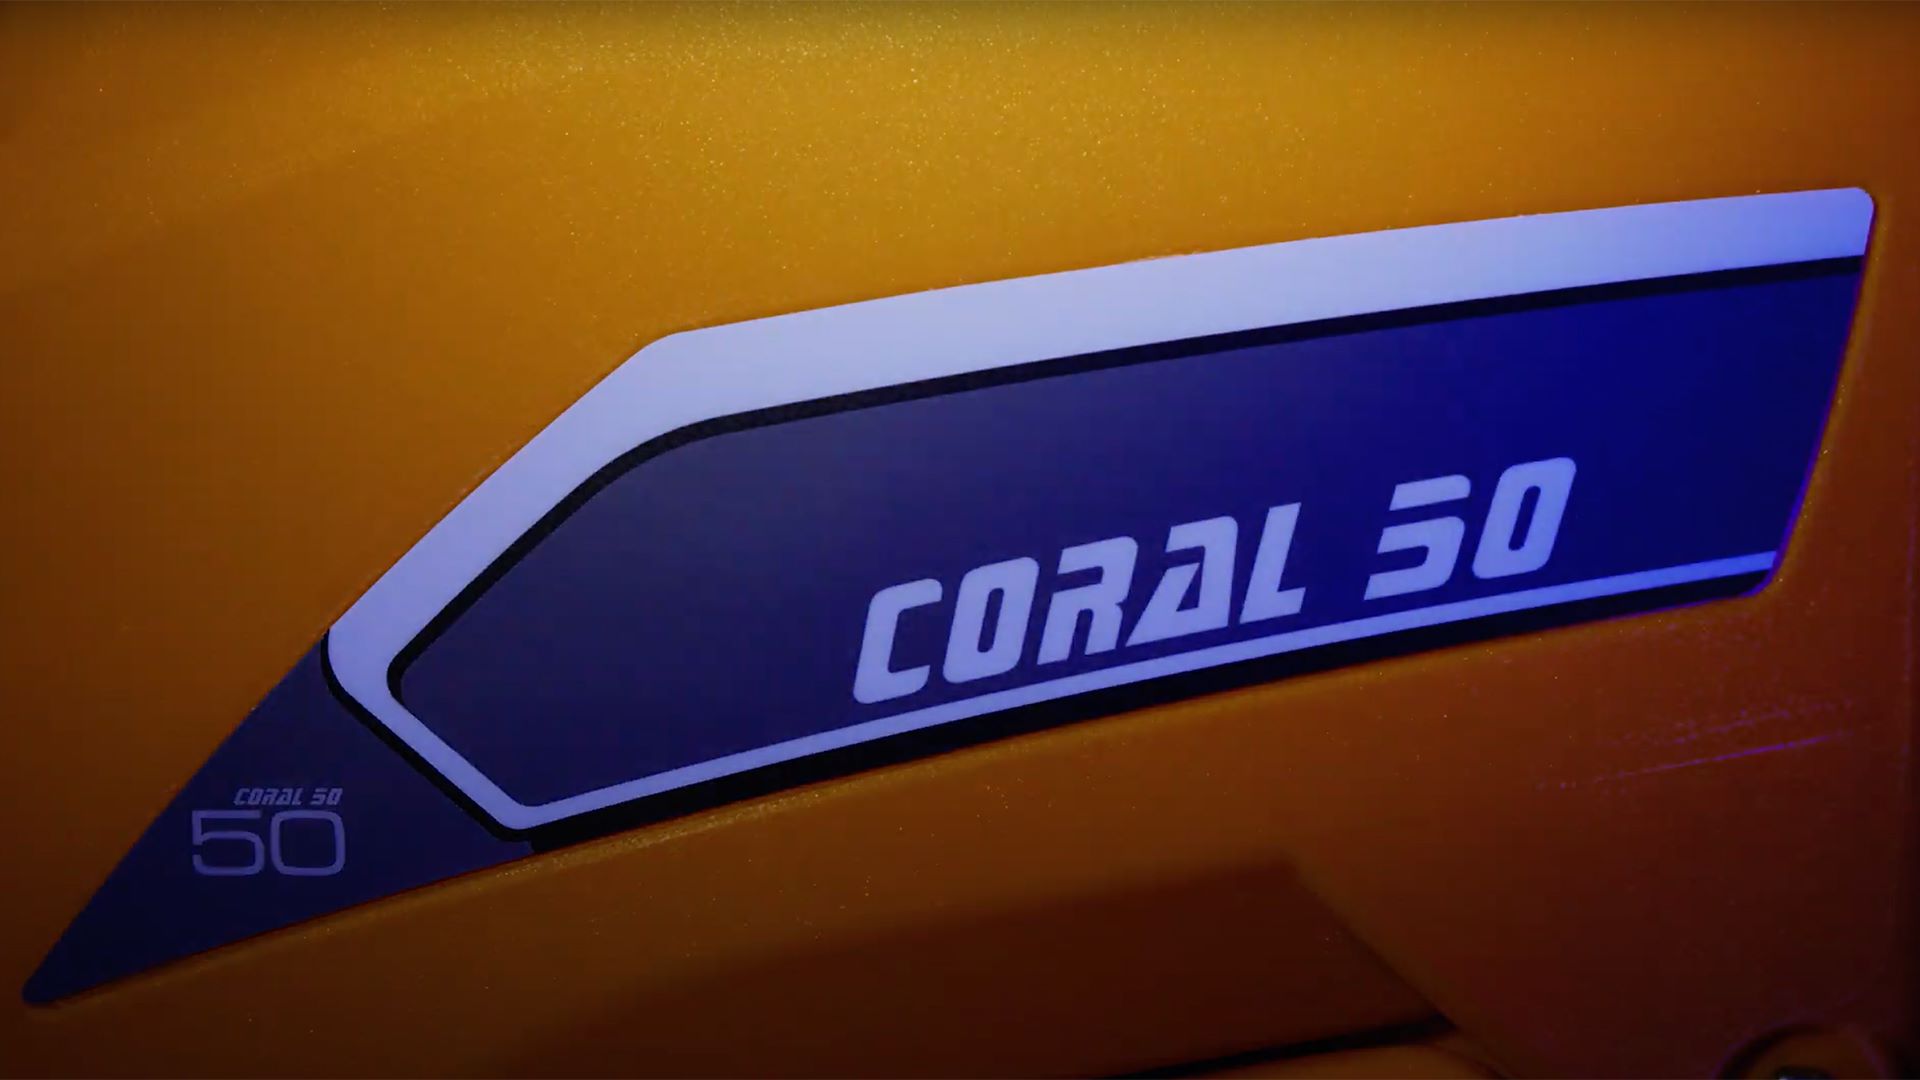 Nuova coral 50!